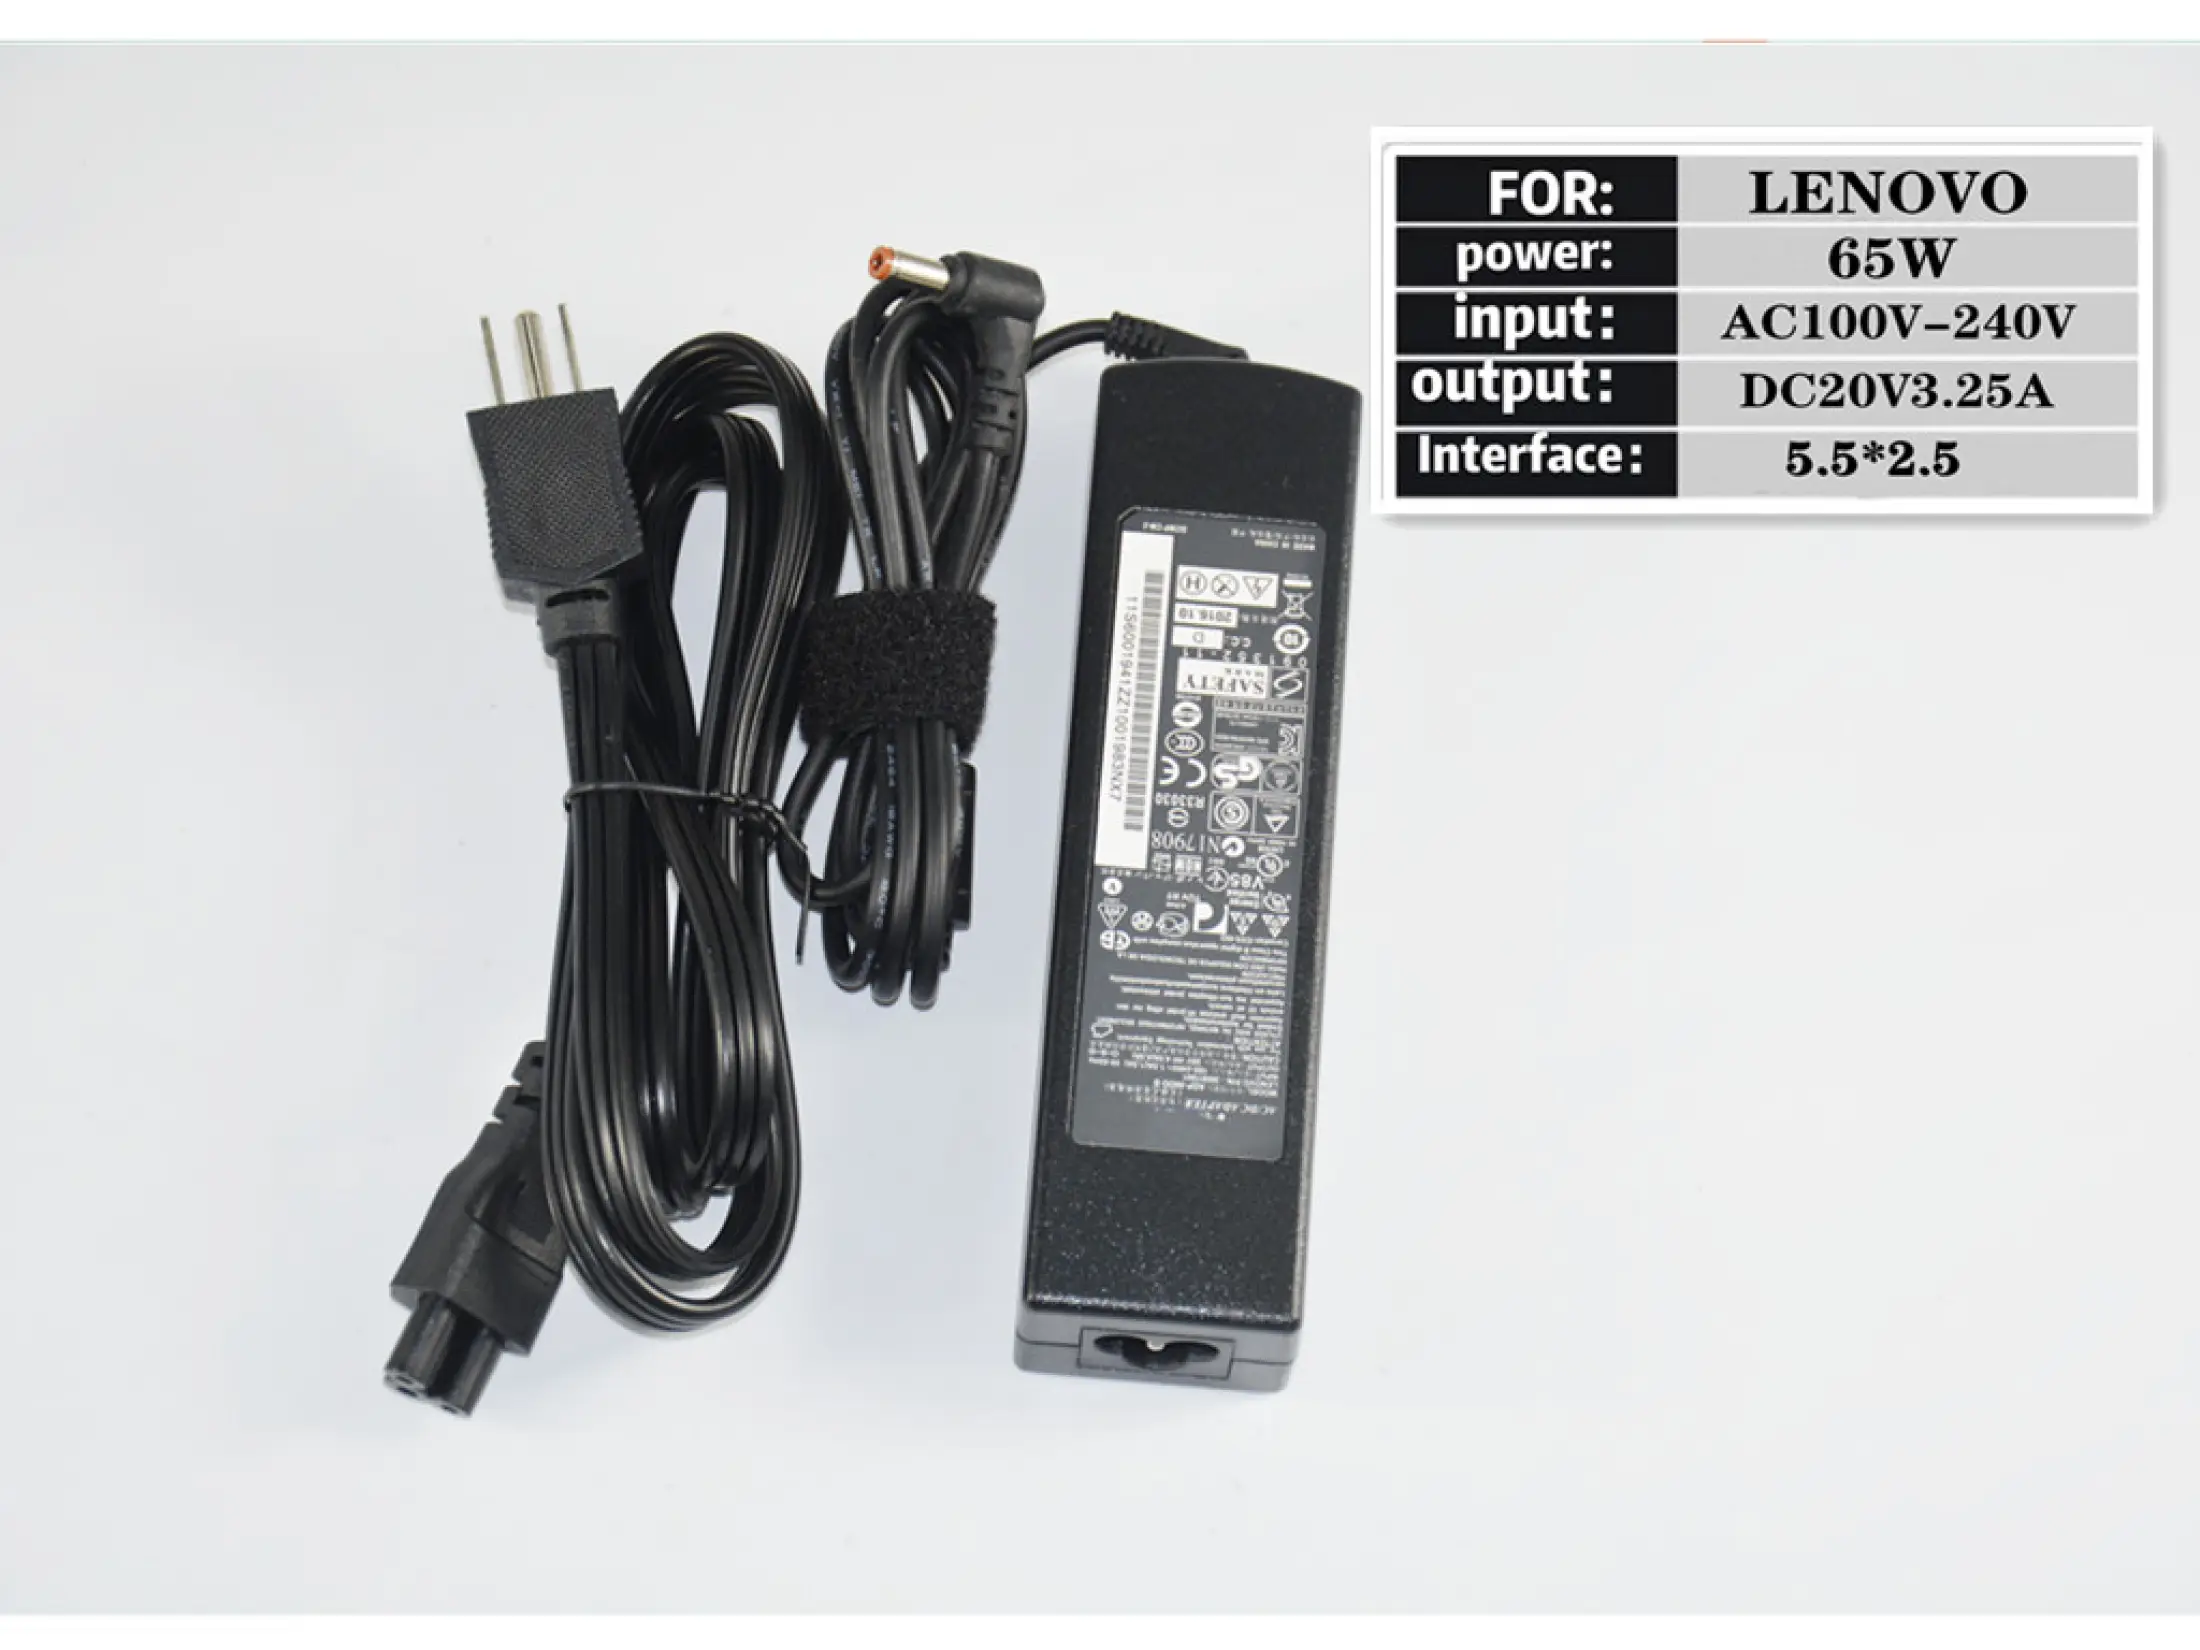 รูปภาพของ IT Adapter Notebook อะแดปเตอร์ For LENOVO 20V 3.25A หัว 5.5*2.5 (สีดำ)